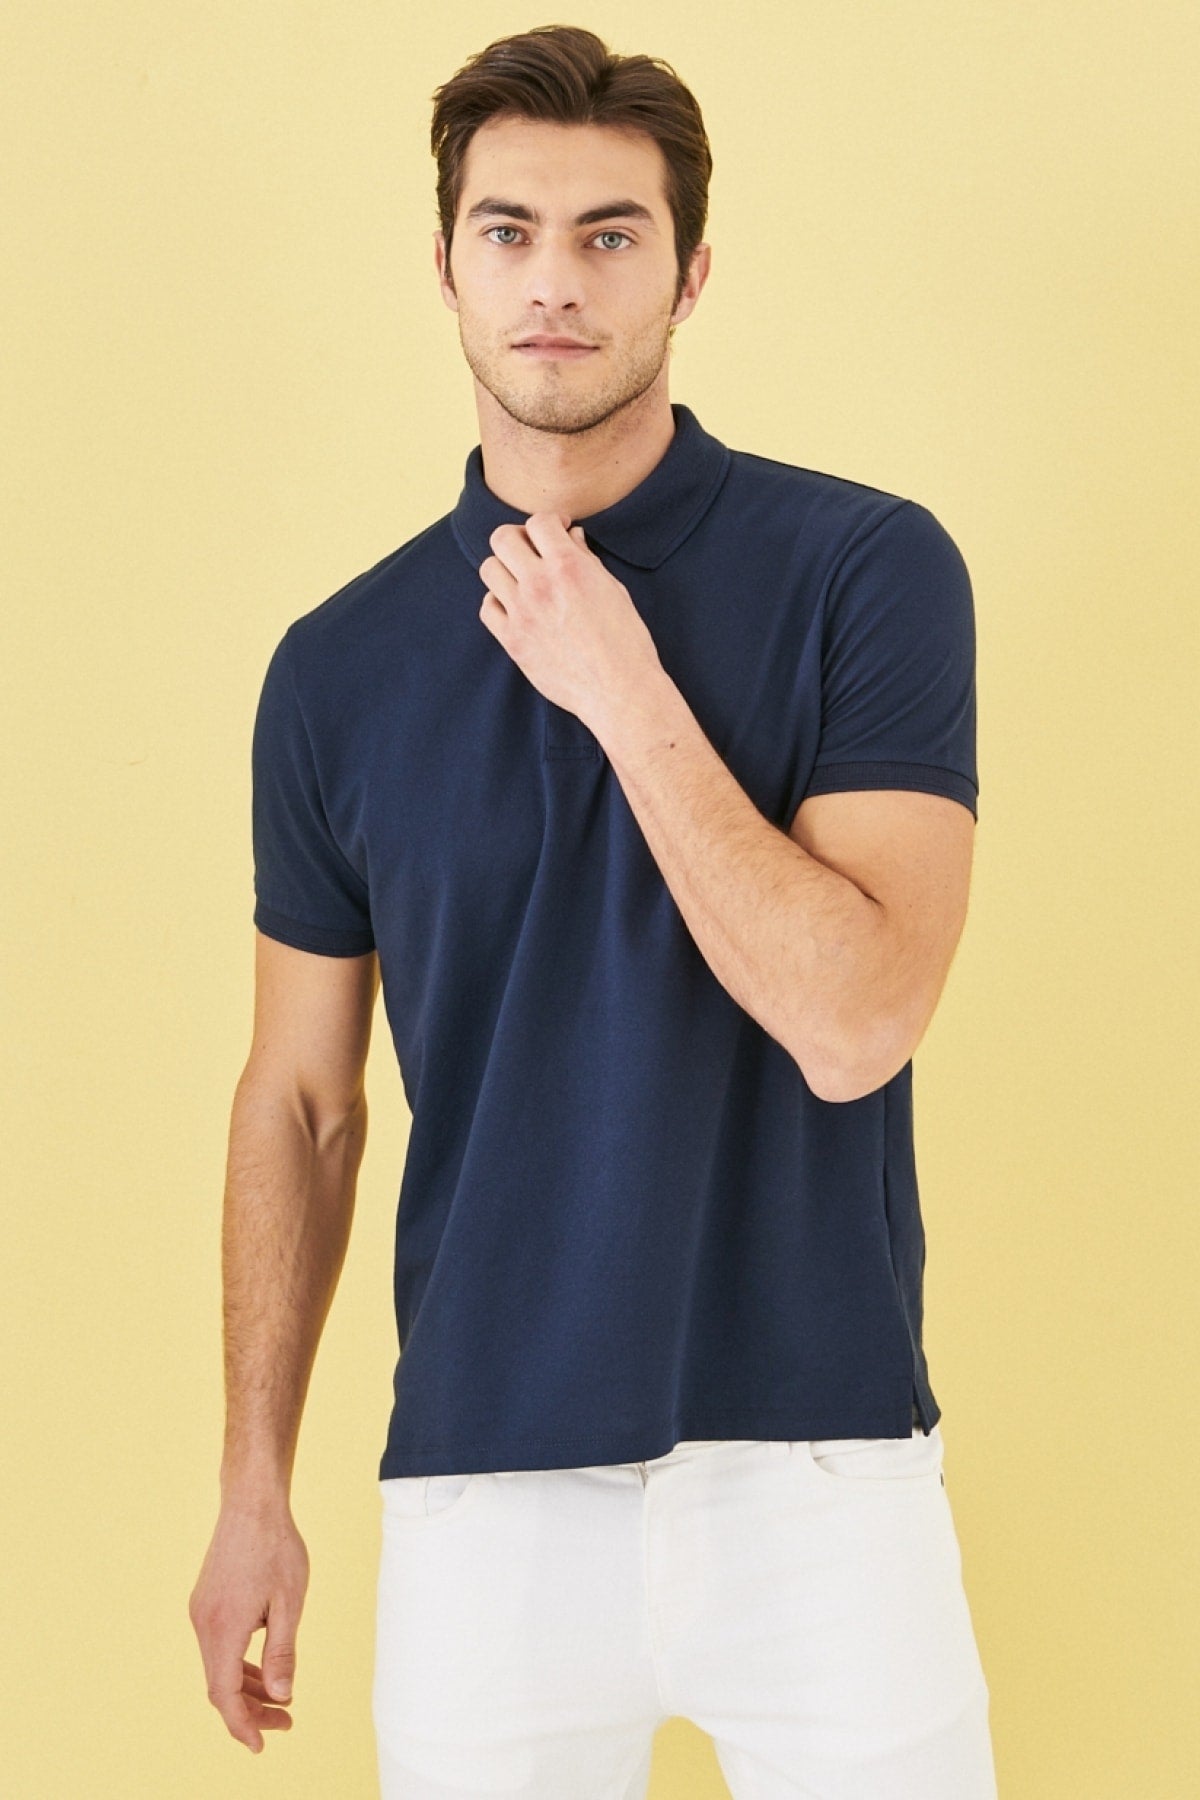  Мужская безусадочная хлопчатобумажная ткань Slim Fit Slim Fit Темно-синяя футболка с воротником-поло с отворотом